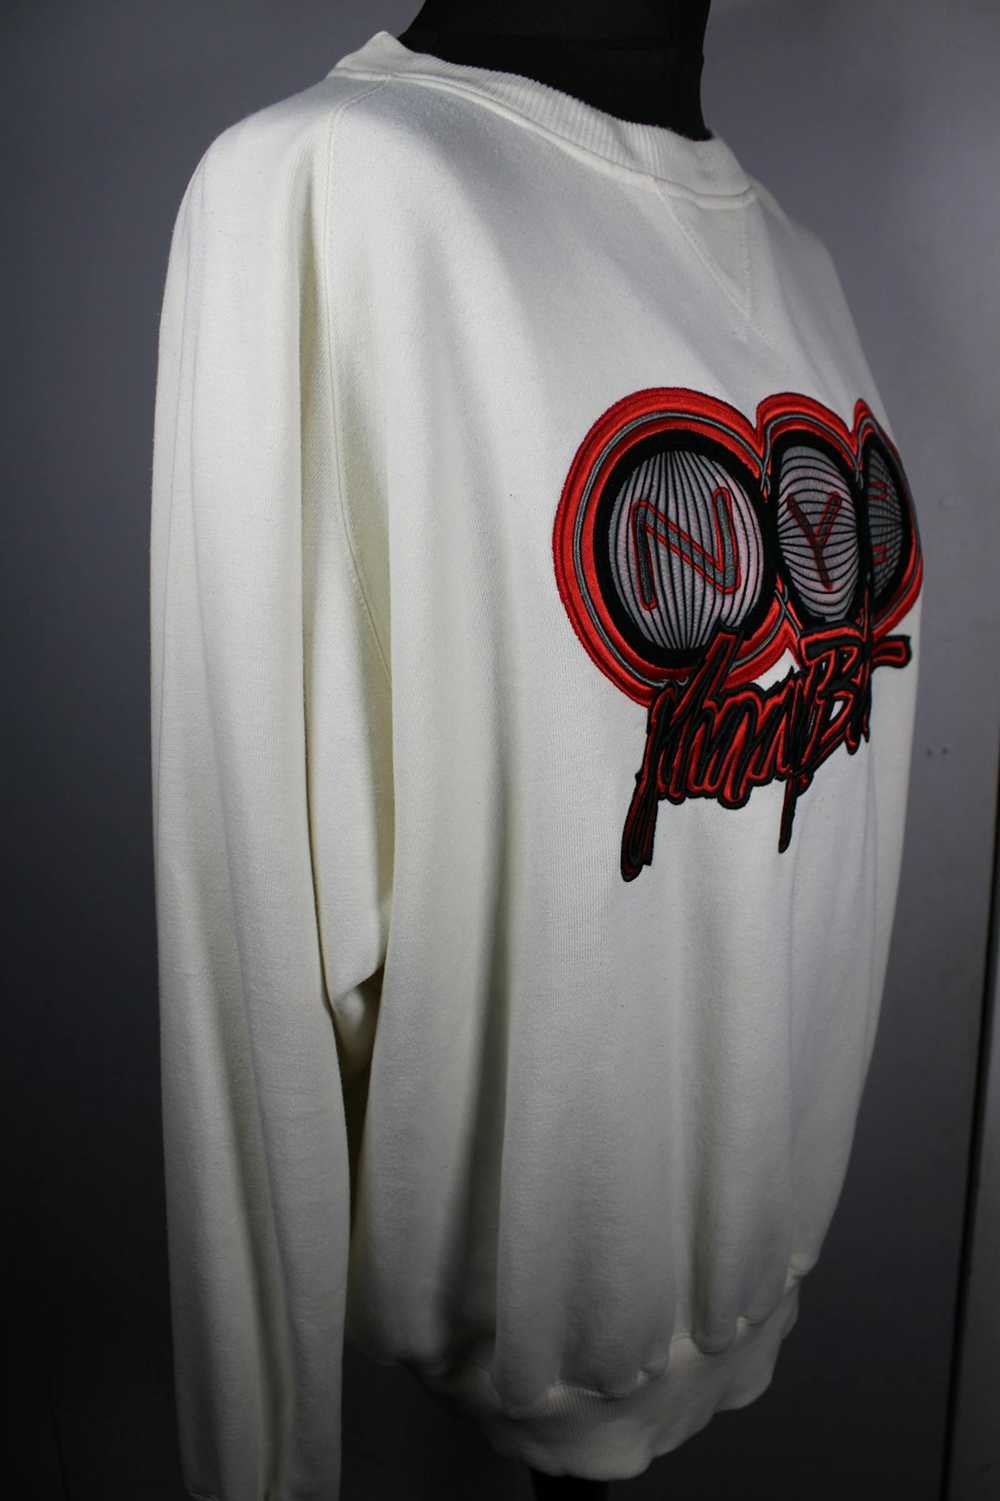 Method Method Man “Johnny Blaze” NYC sweatshirt - image 6